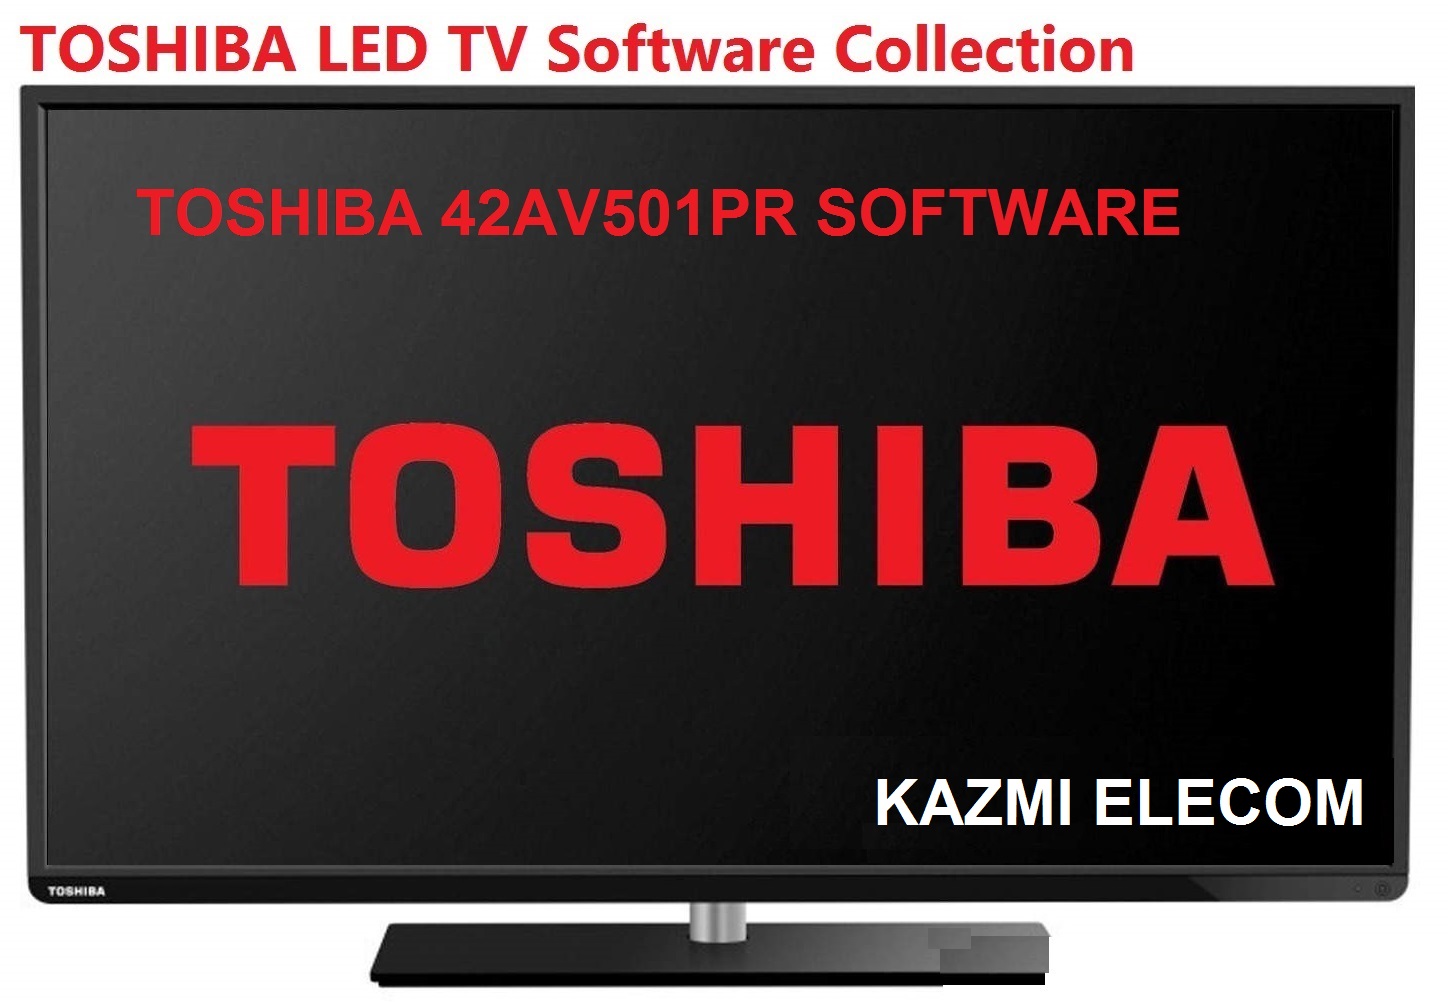 Toshiba 42Av501Pr